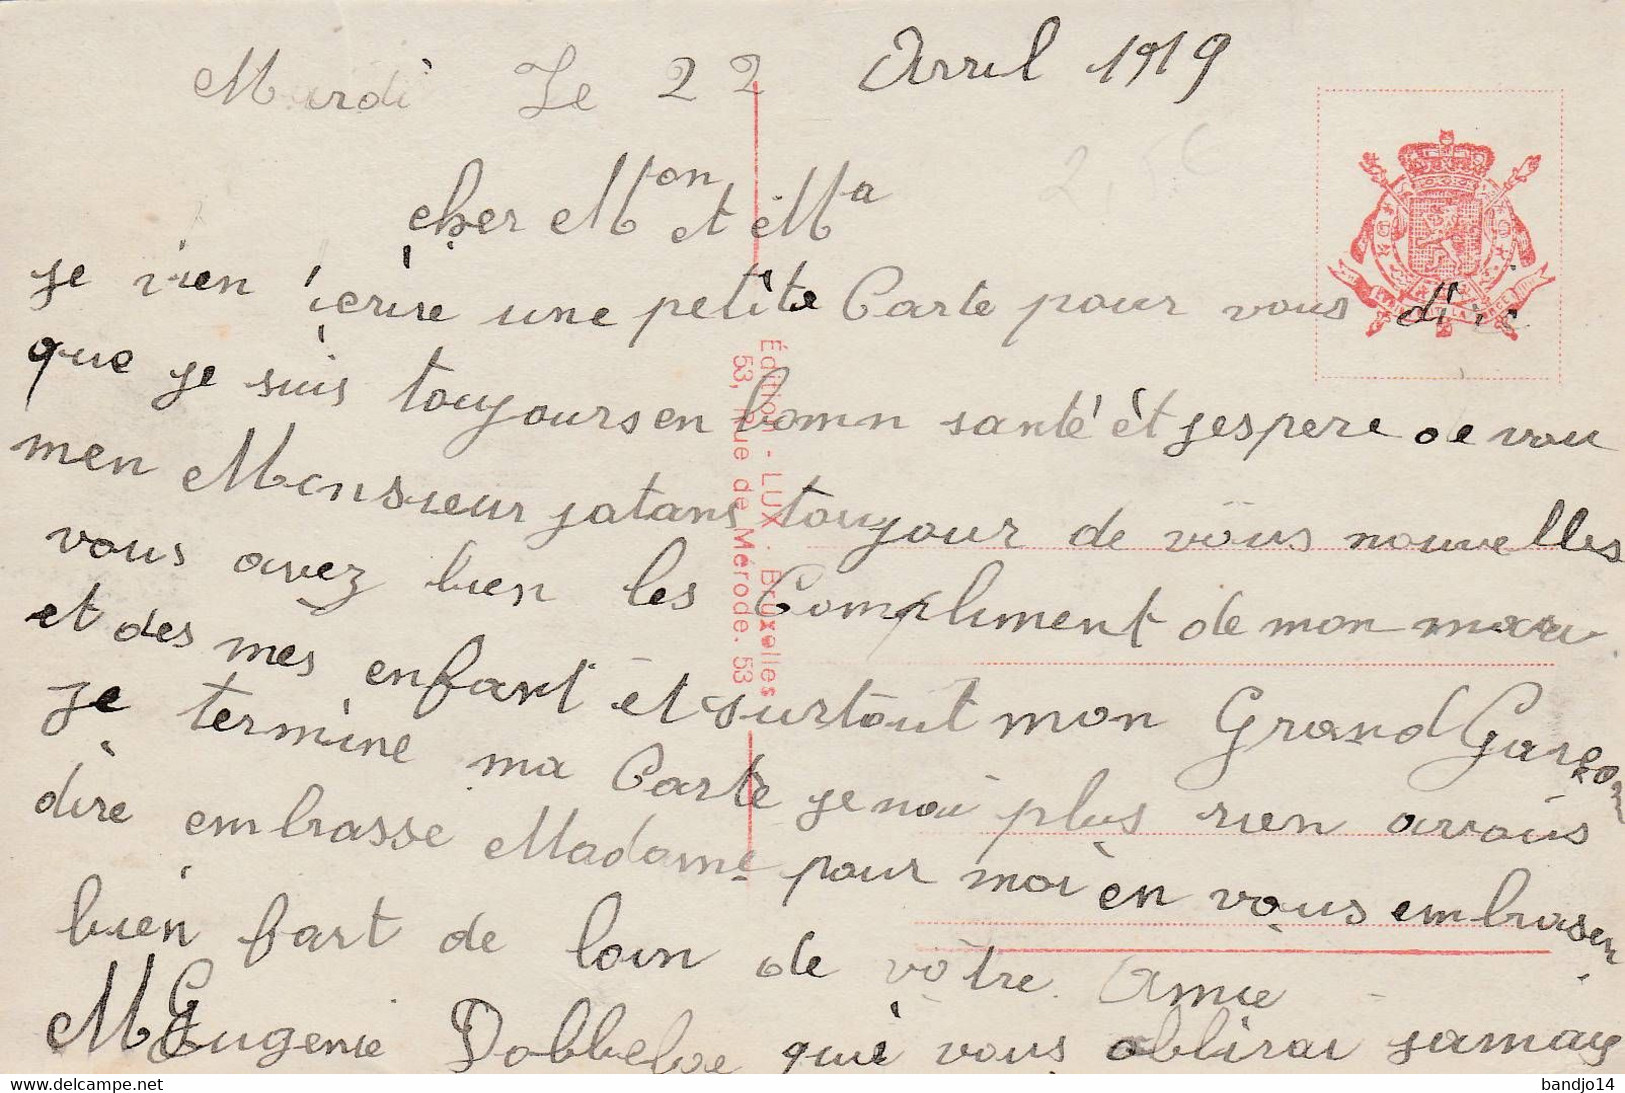 1918 - Entrée De La Famille Royale Et Des Troupes Alliées Le 22 Novembre    - Scan Recto-verso - Feste, Eventi